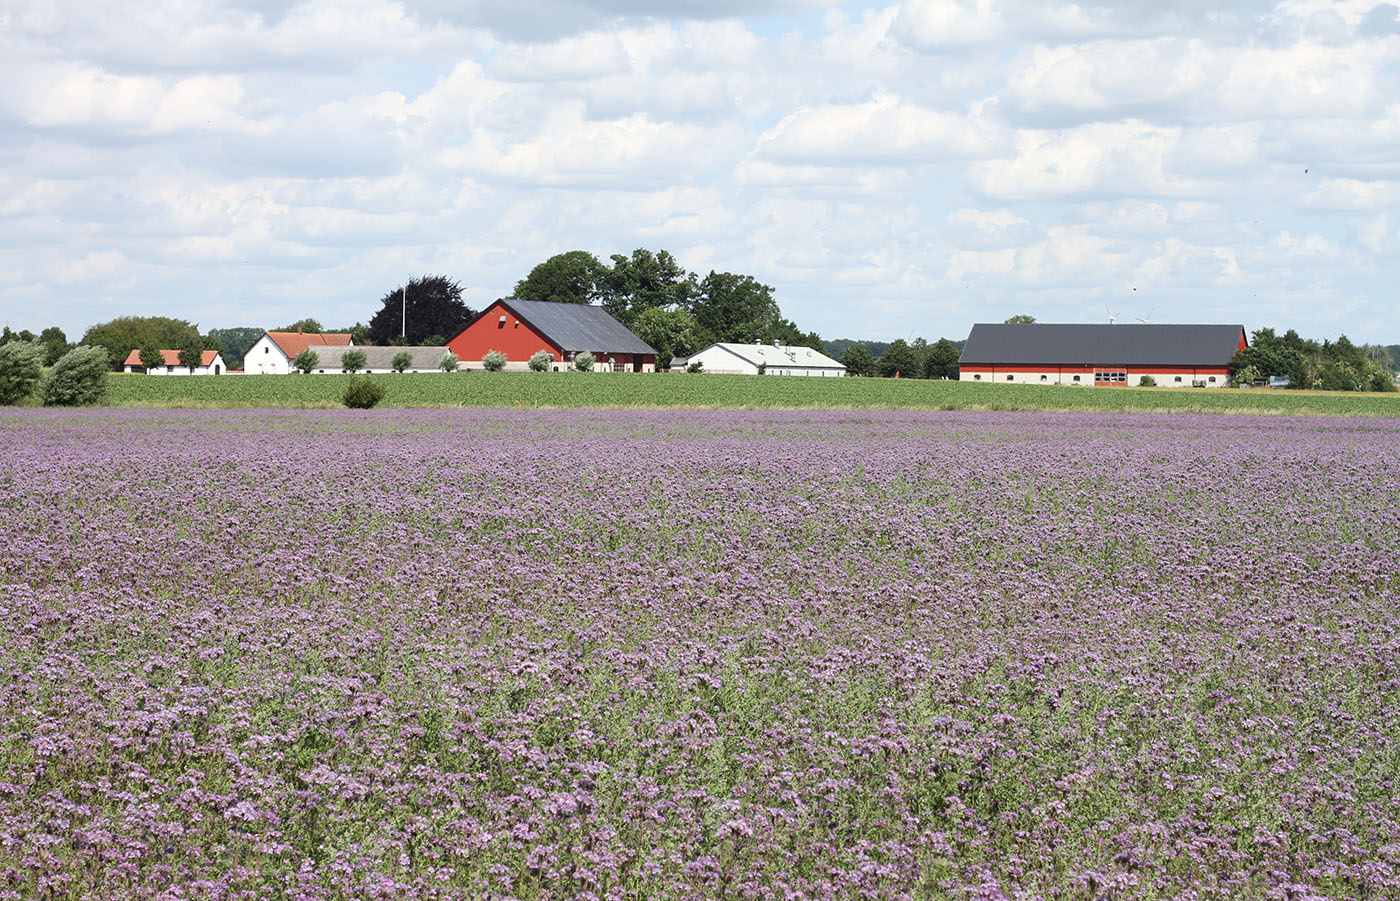 Vy över Sandby Gård med
ett blommande honungsörtsfält i förgrunden.